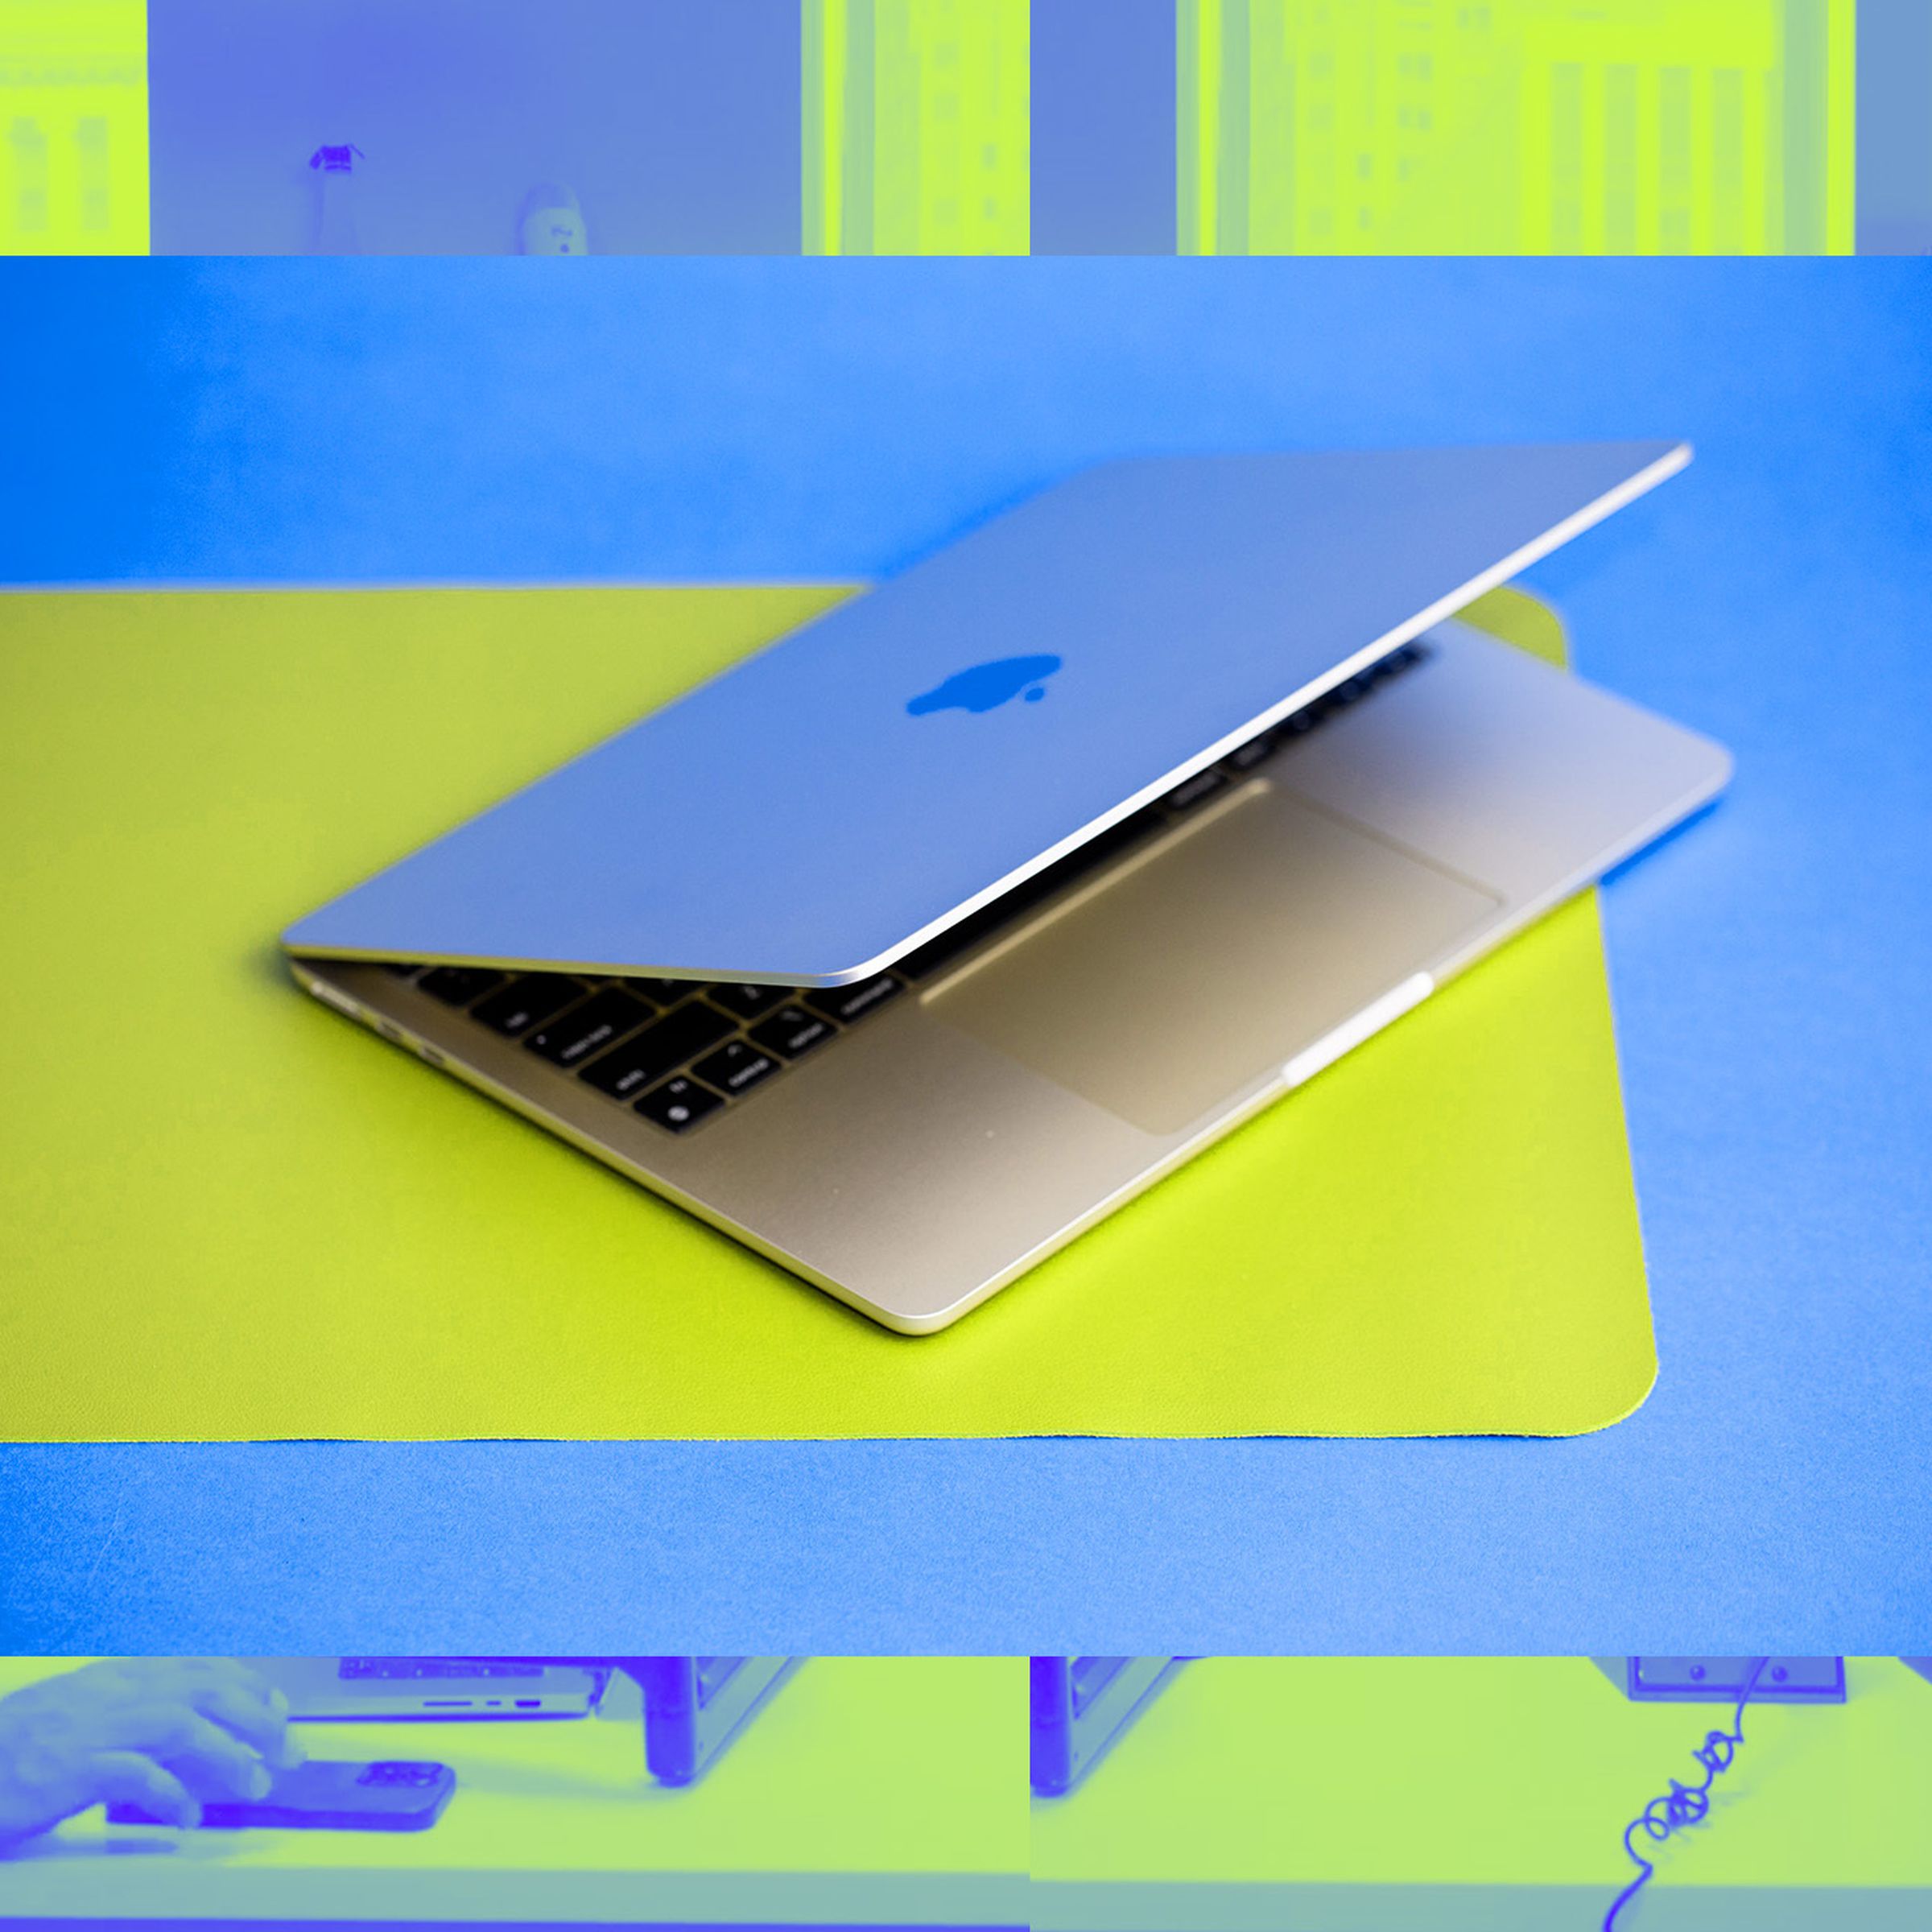 MacBook Air open on yellow desk